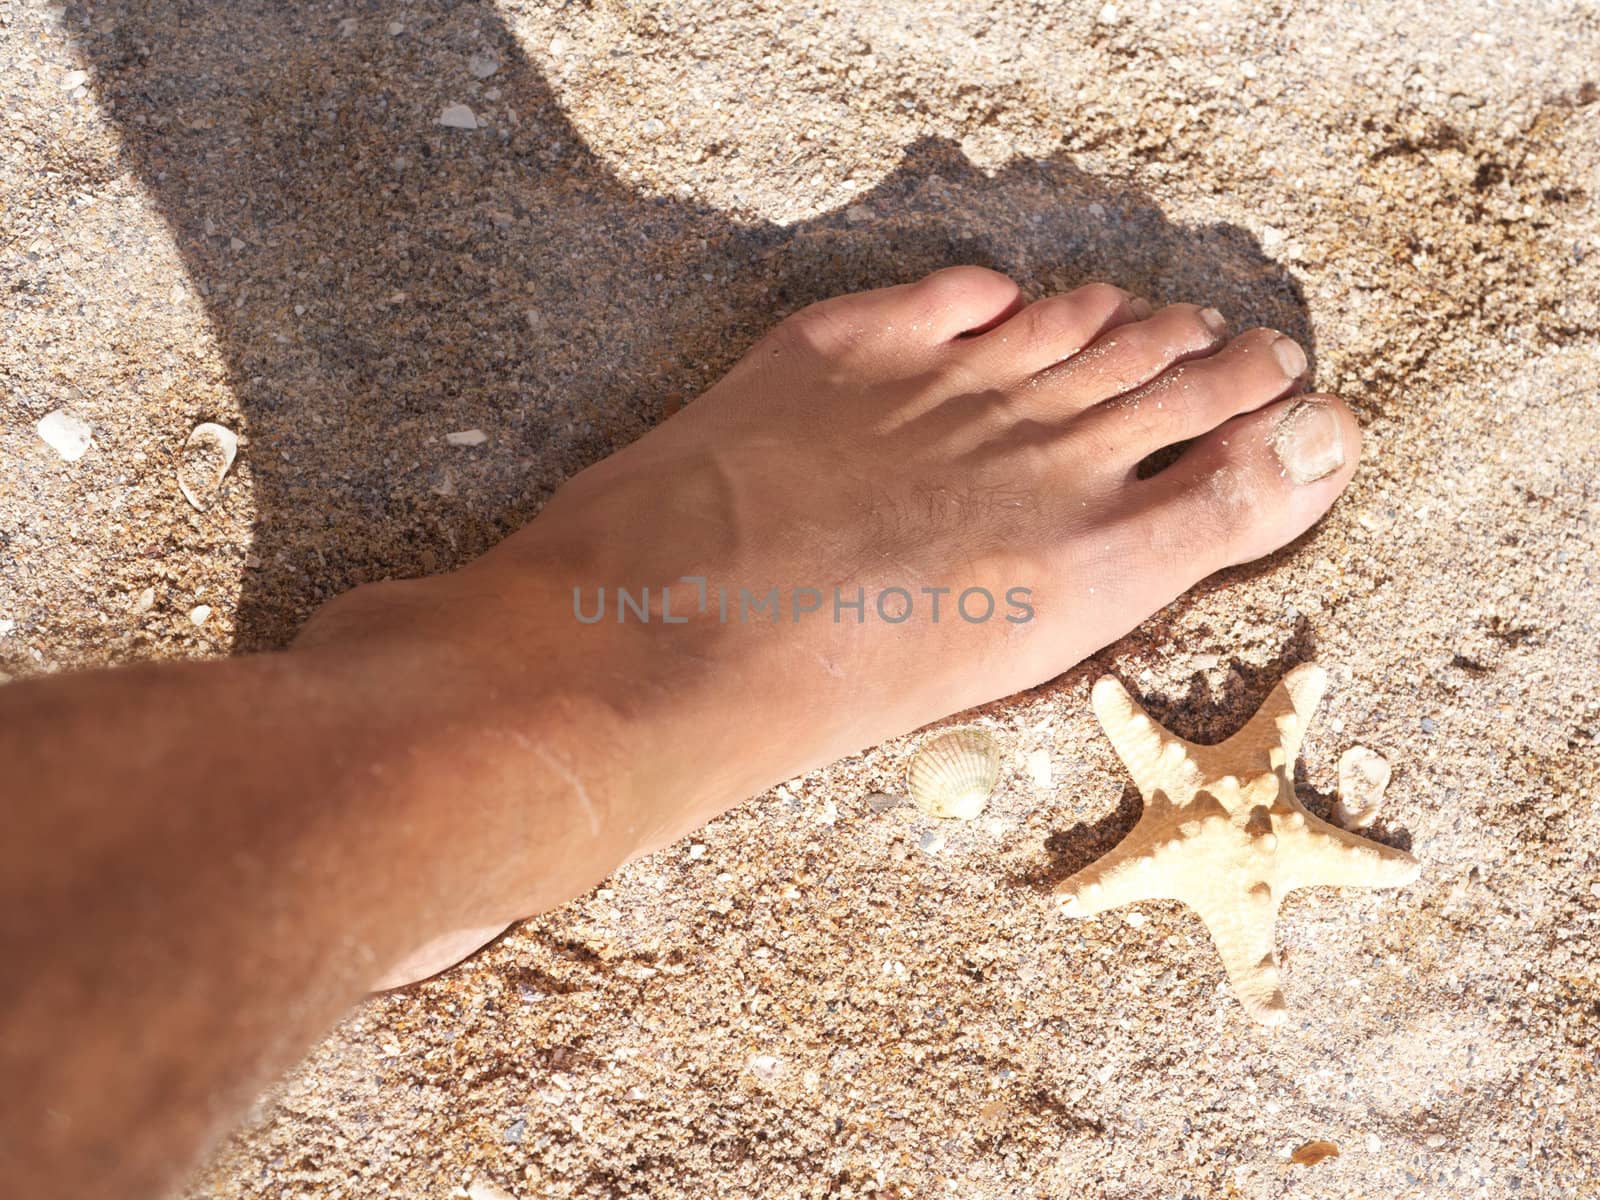 Sea star and the human foot by petrkurgan